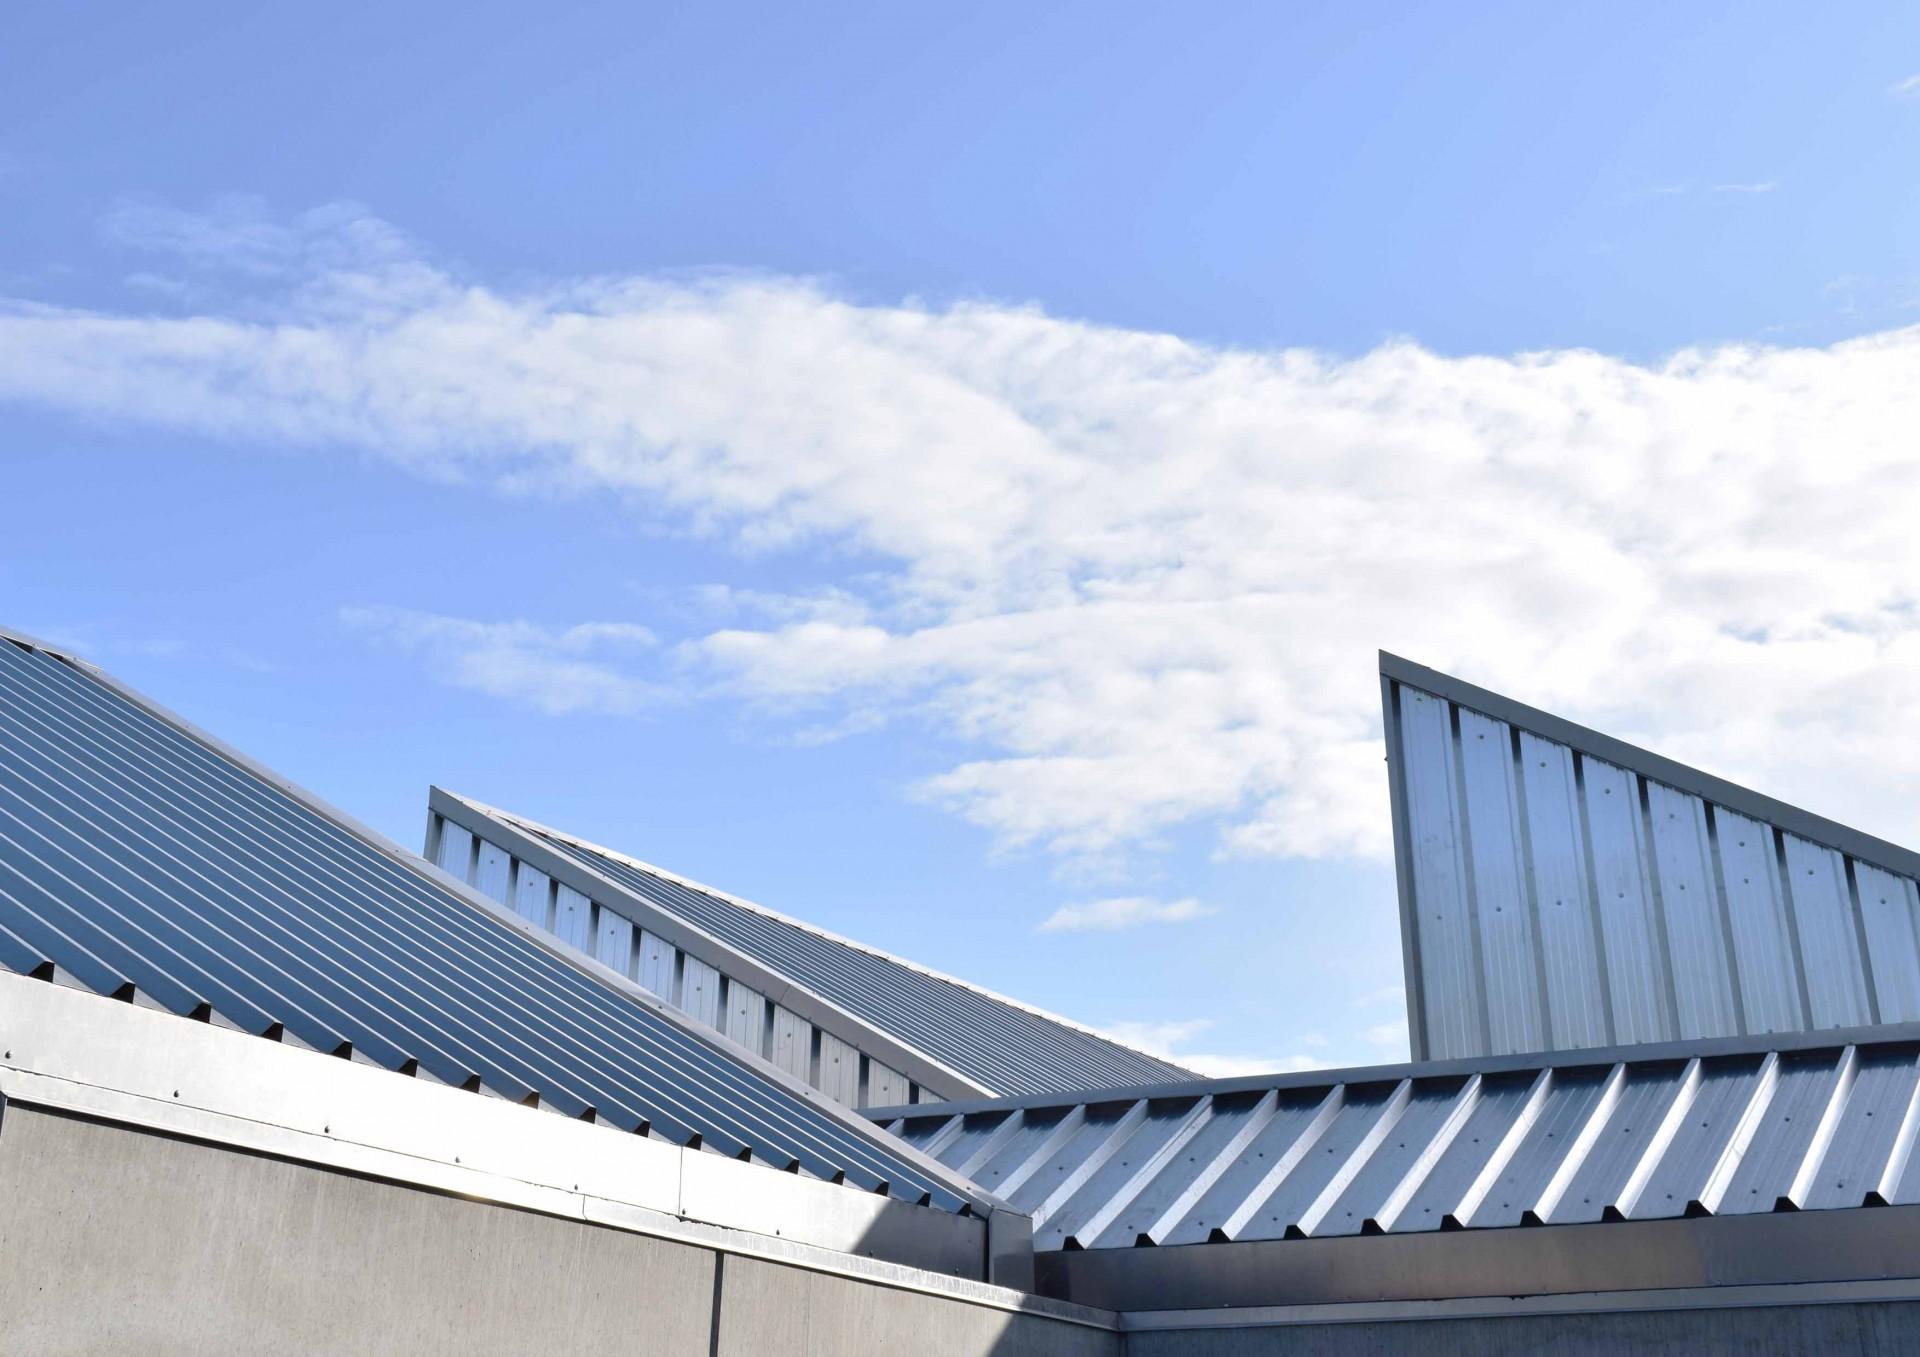 Udvidelse af C.C. Contractors kontorhus glider fint ind i rækken af Utzons karakteristiske modulære tage. Pressefoto: Herning Kommune.